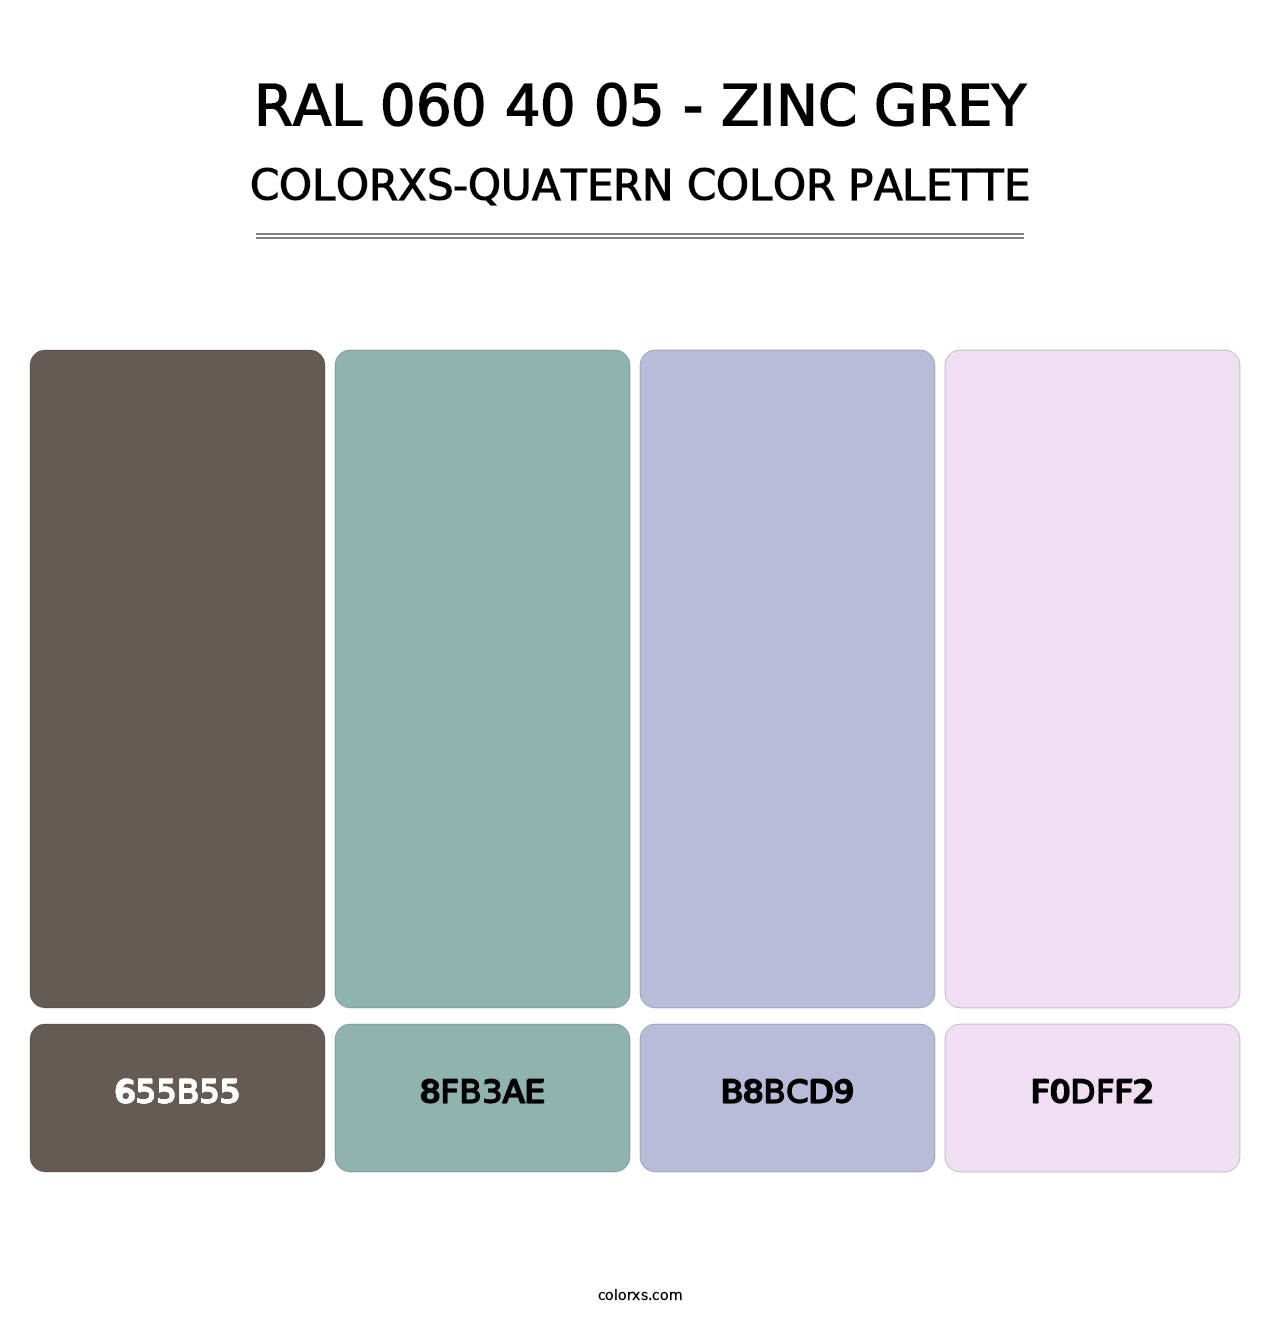 RAL 060 40 05 - Zinc Grey - Colorxs Quatern Palette